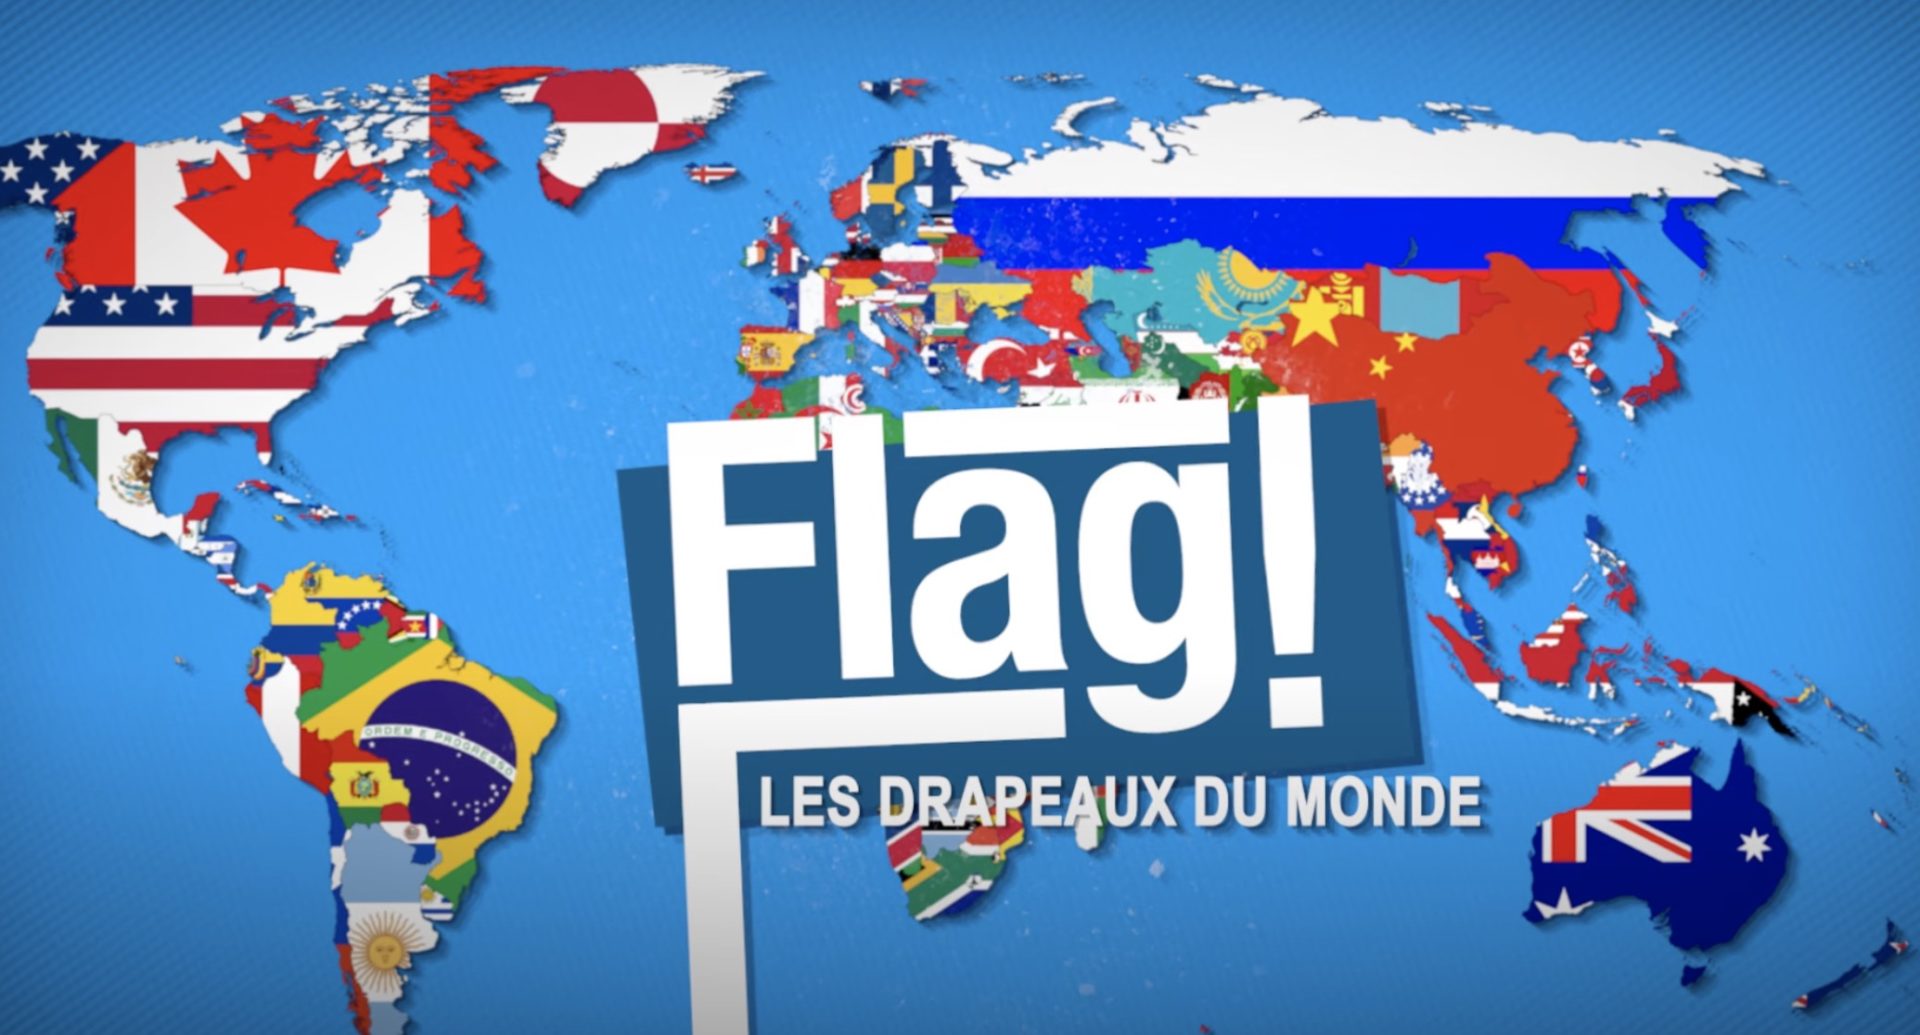 Apprenez l'histoire des drapeaux du monde avec TV5 Monde